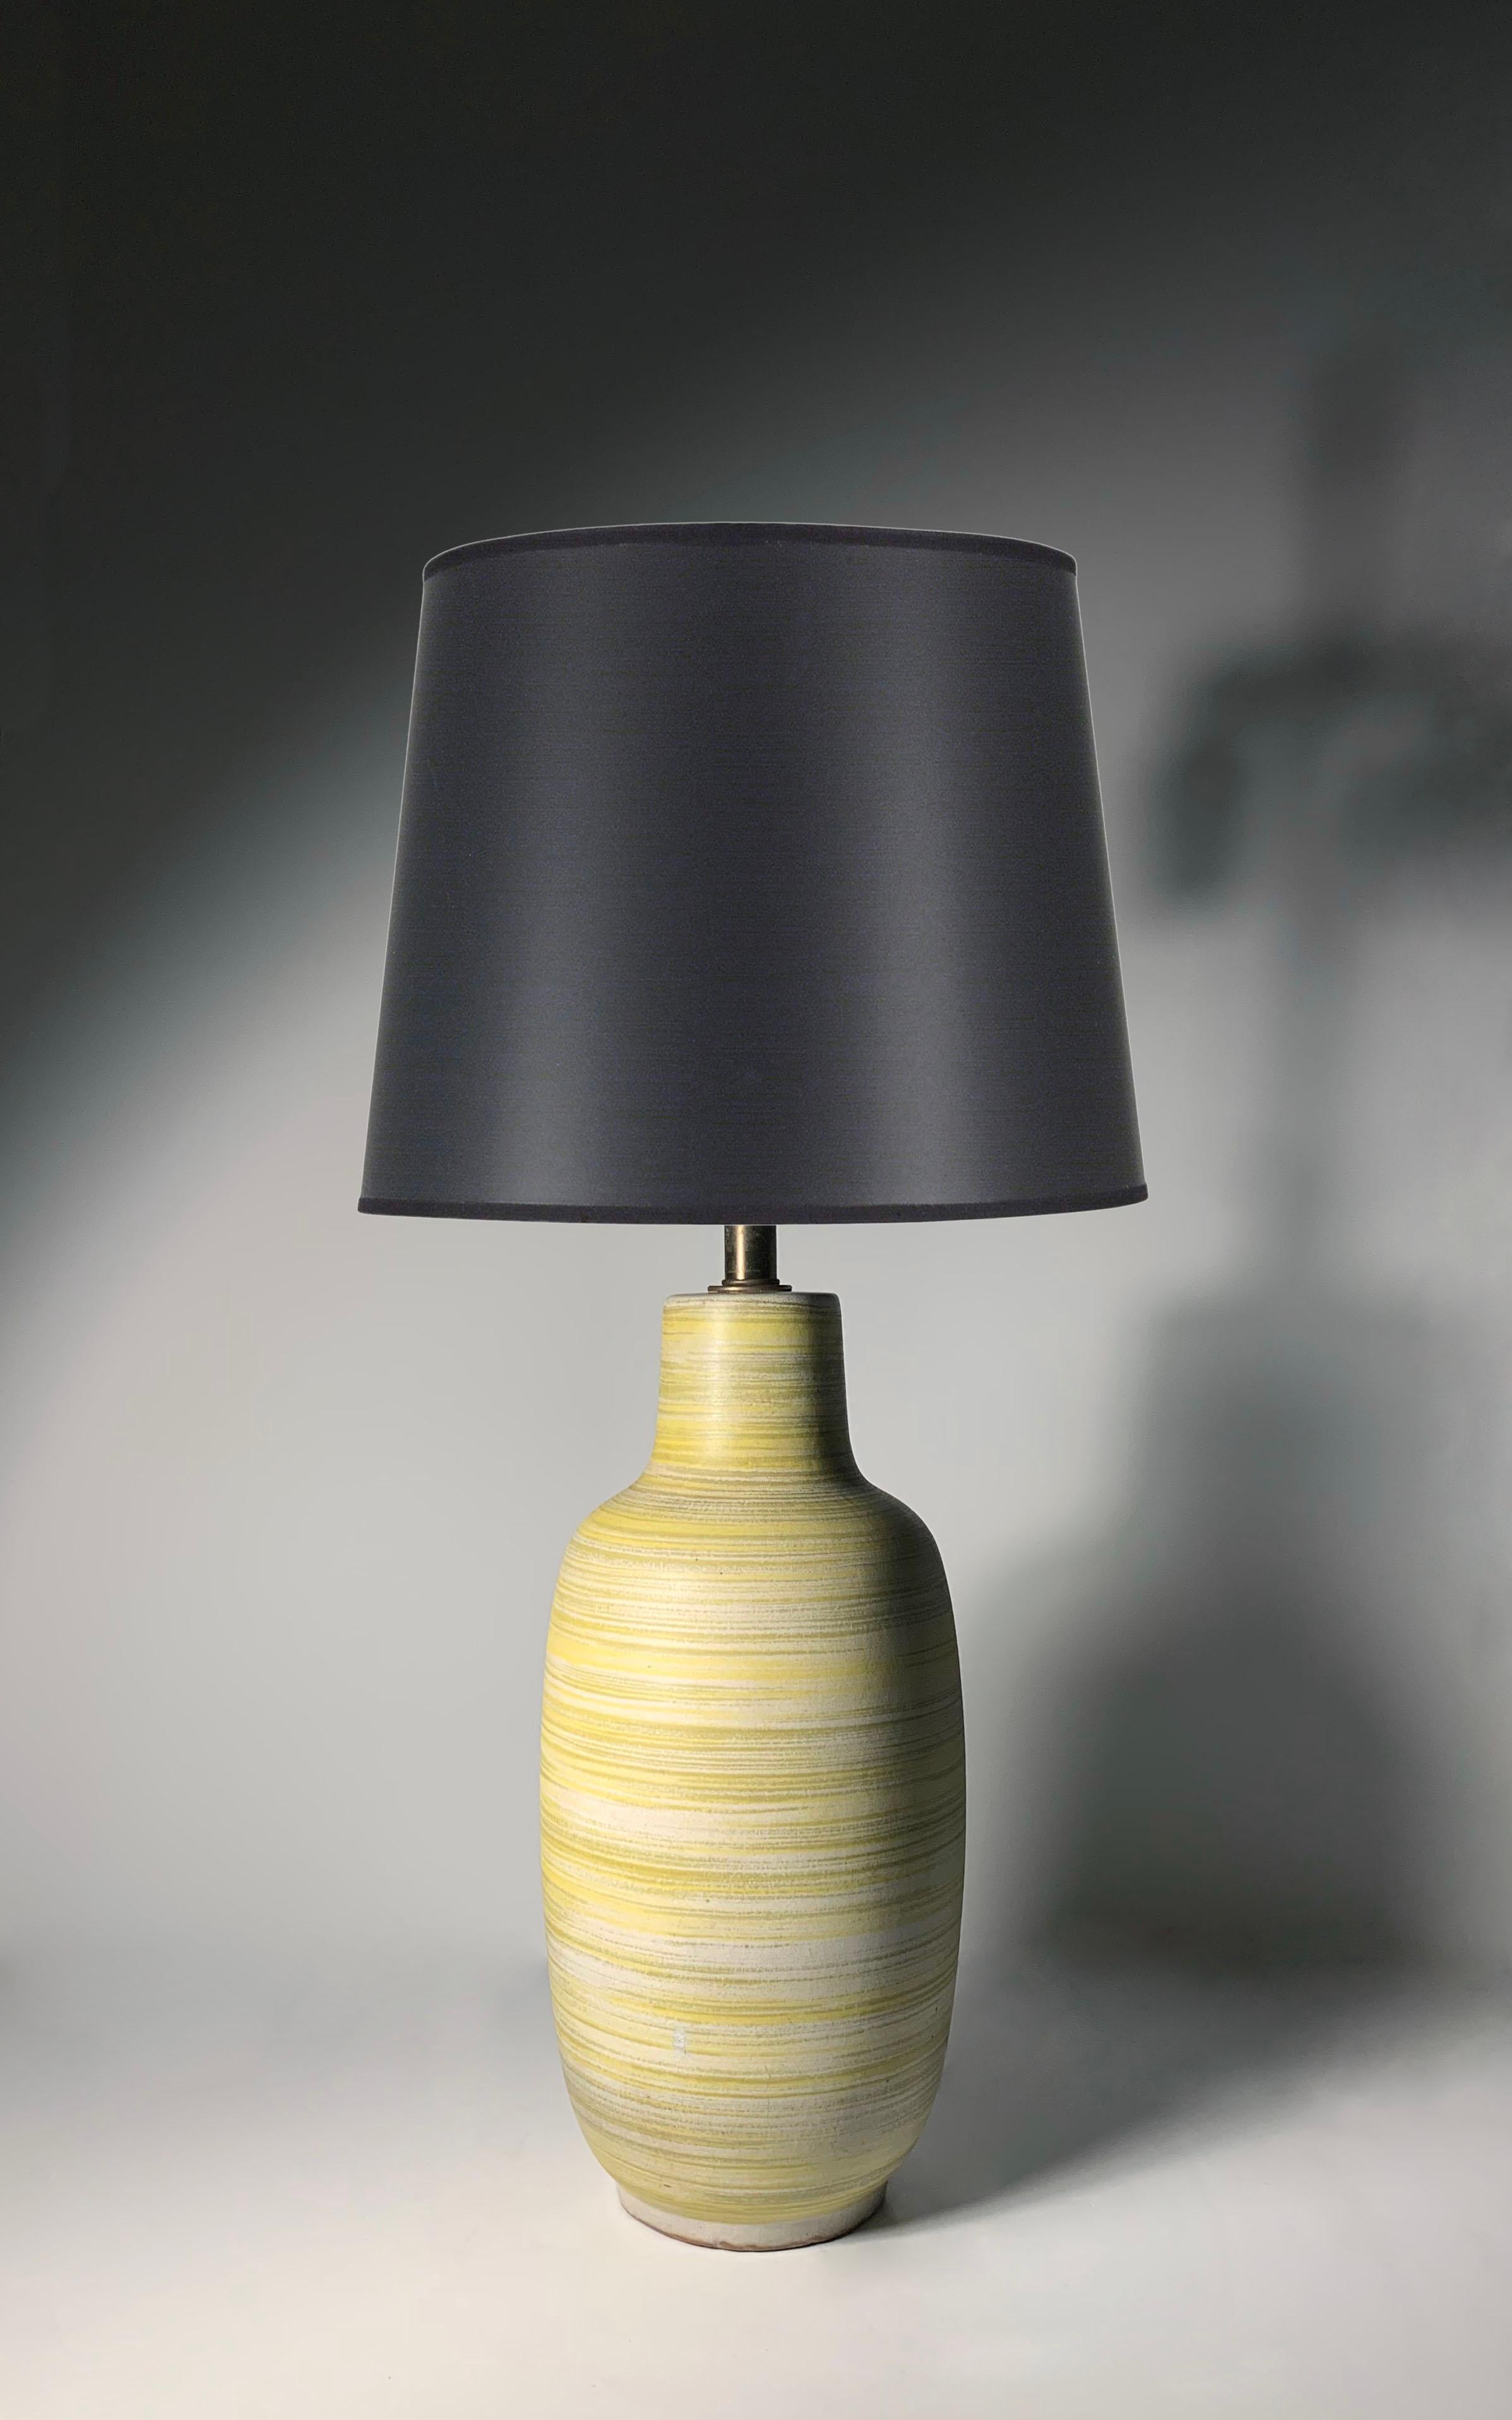 Lampe de table vintage en céramique jaune/vert brossée par Lee Rosen pour Design/One.  Manière de Gordon Martz

29